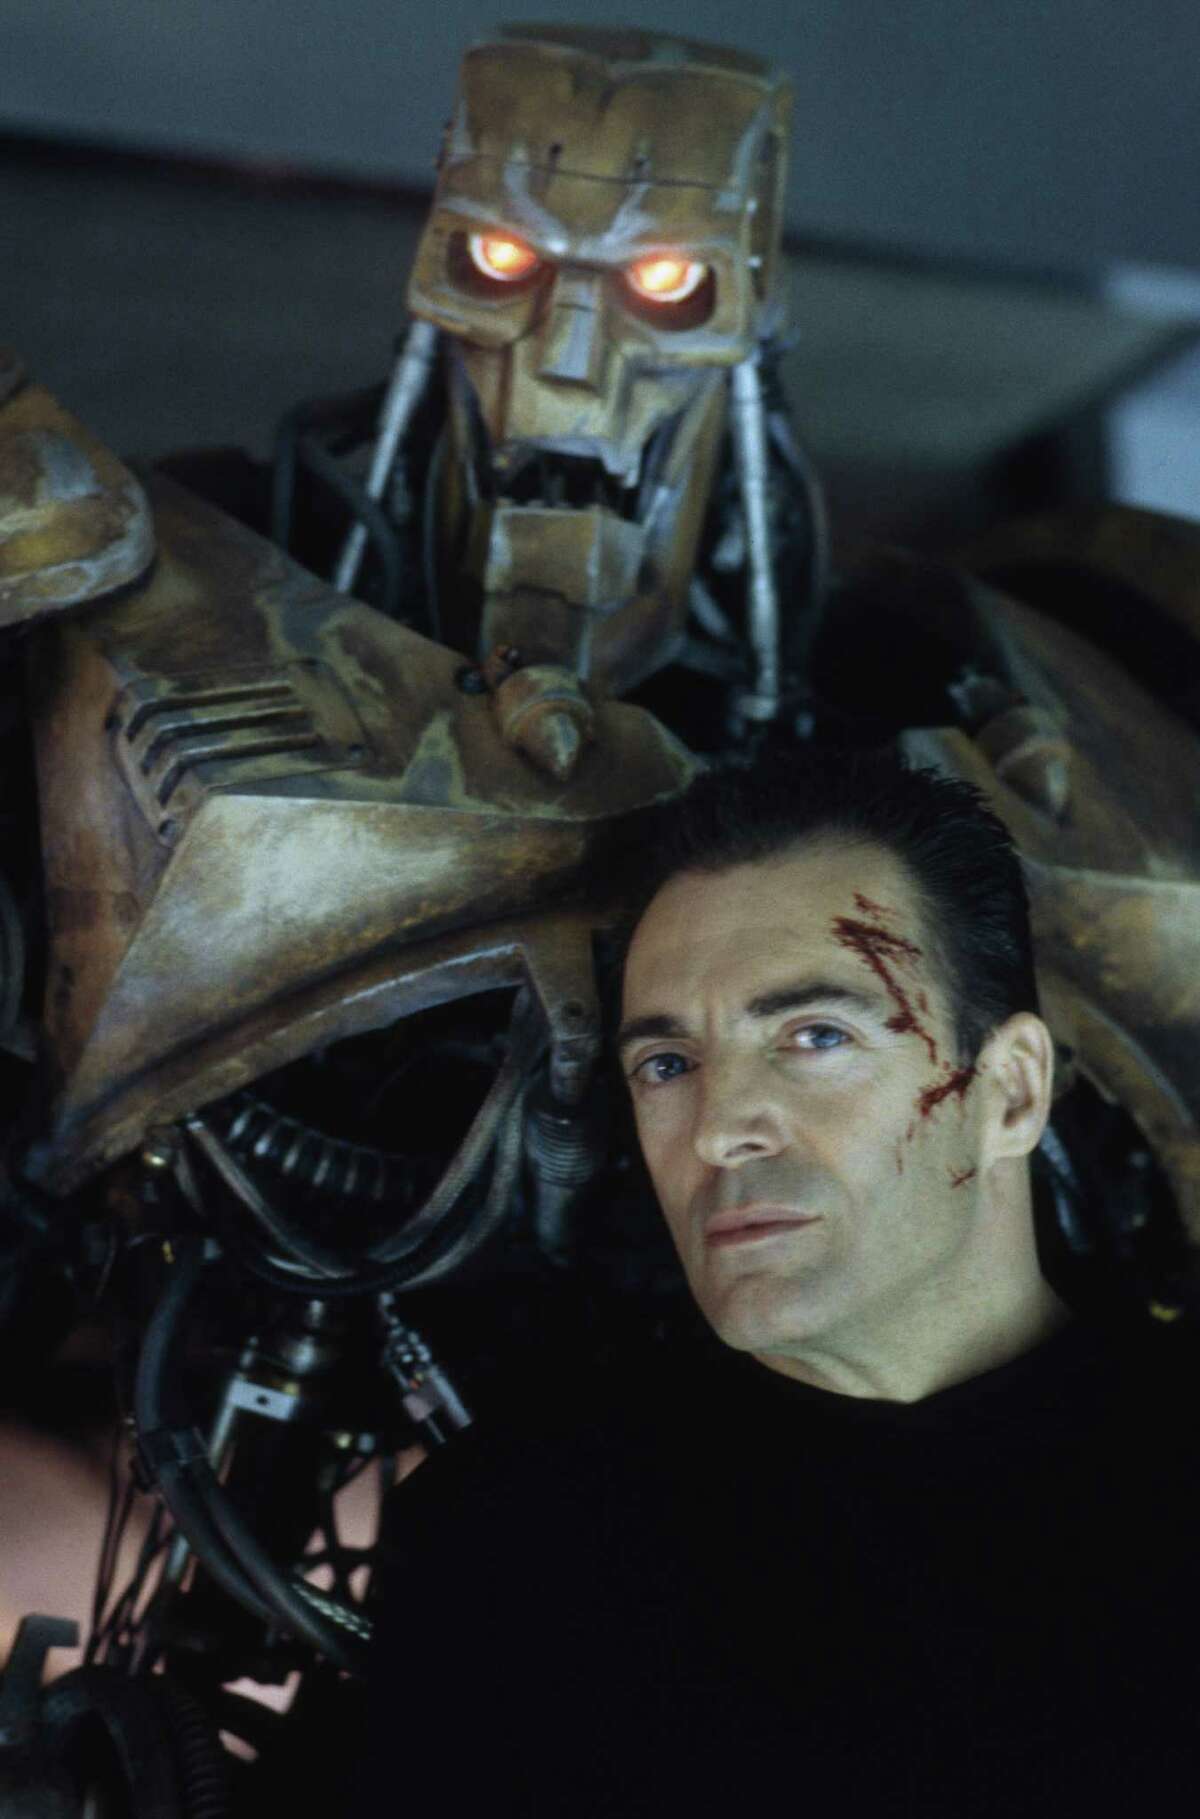 Робот из фильма судья дредд 1995 фото